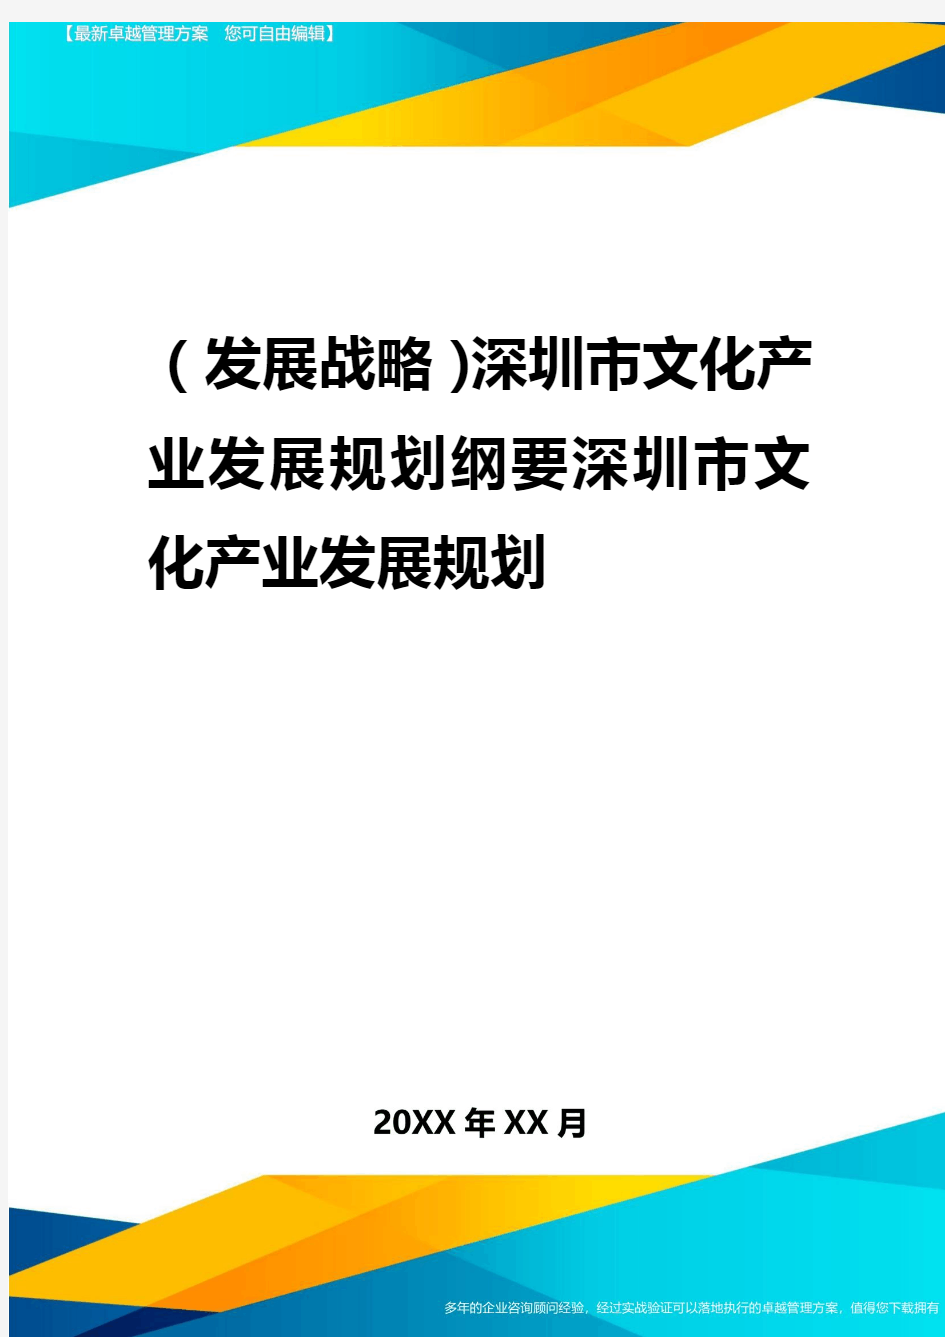 2020年(发展战略)深圳市文化产业发展规划纲要深圳市文化产业发展规划